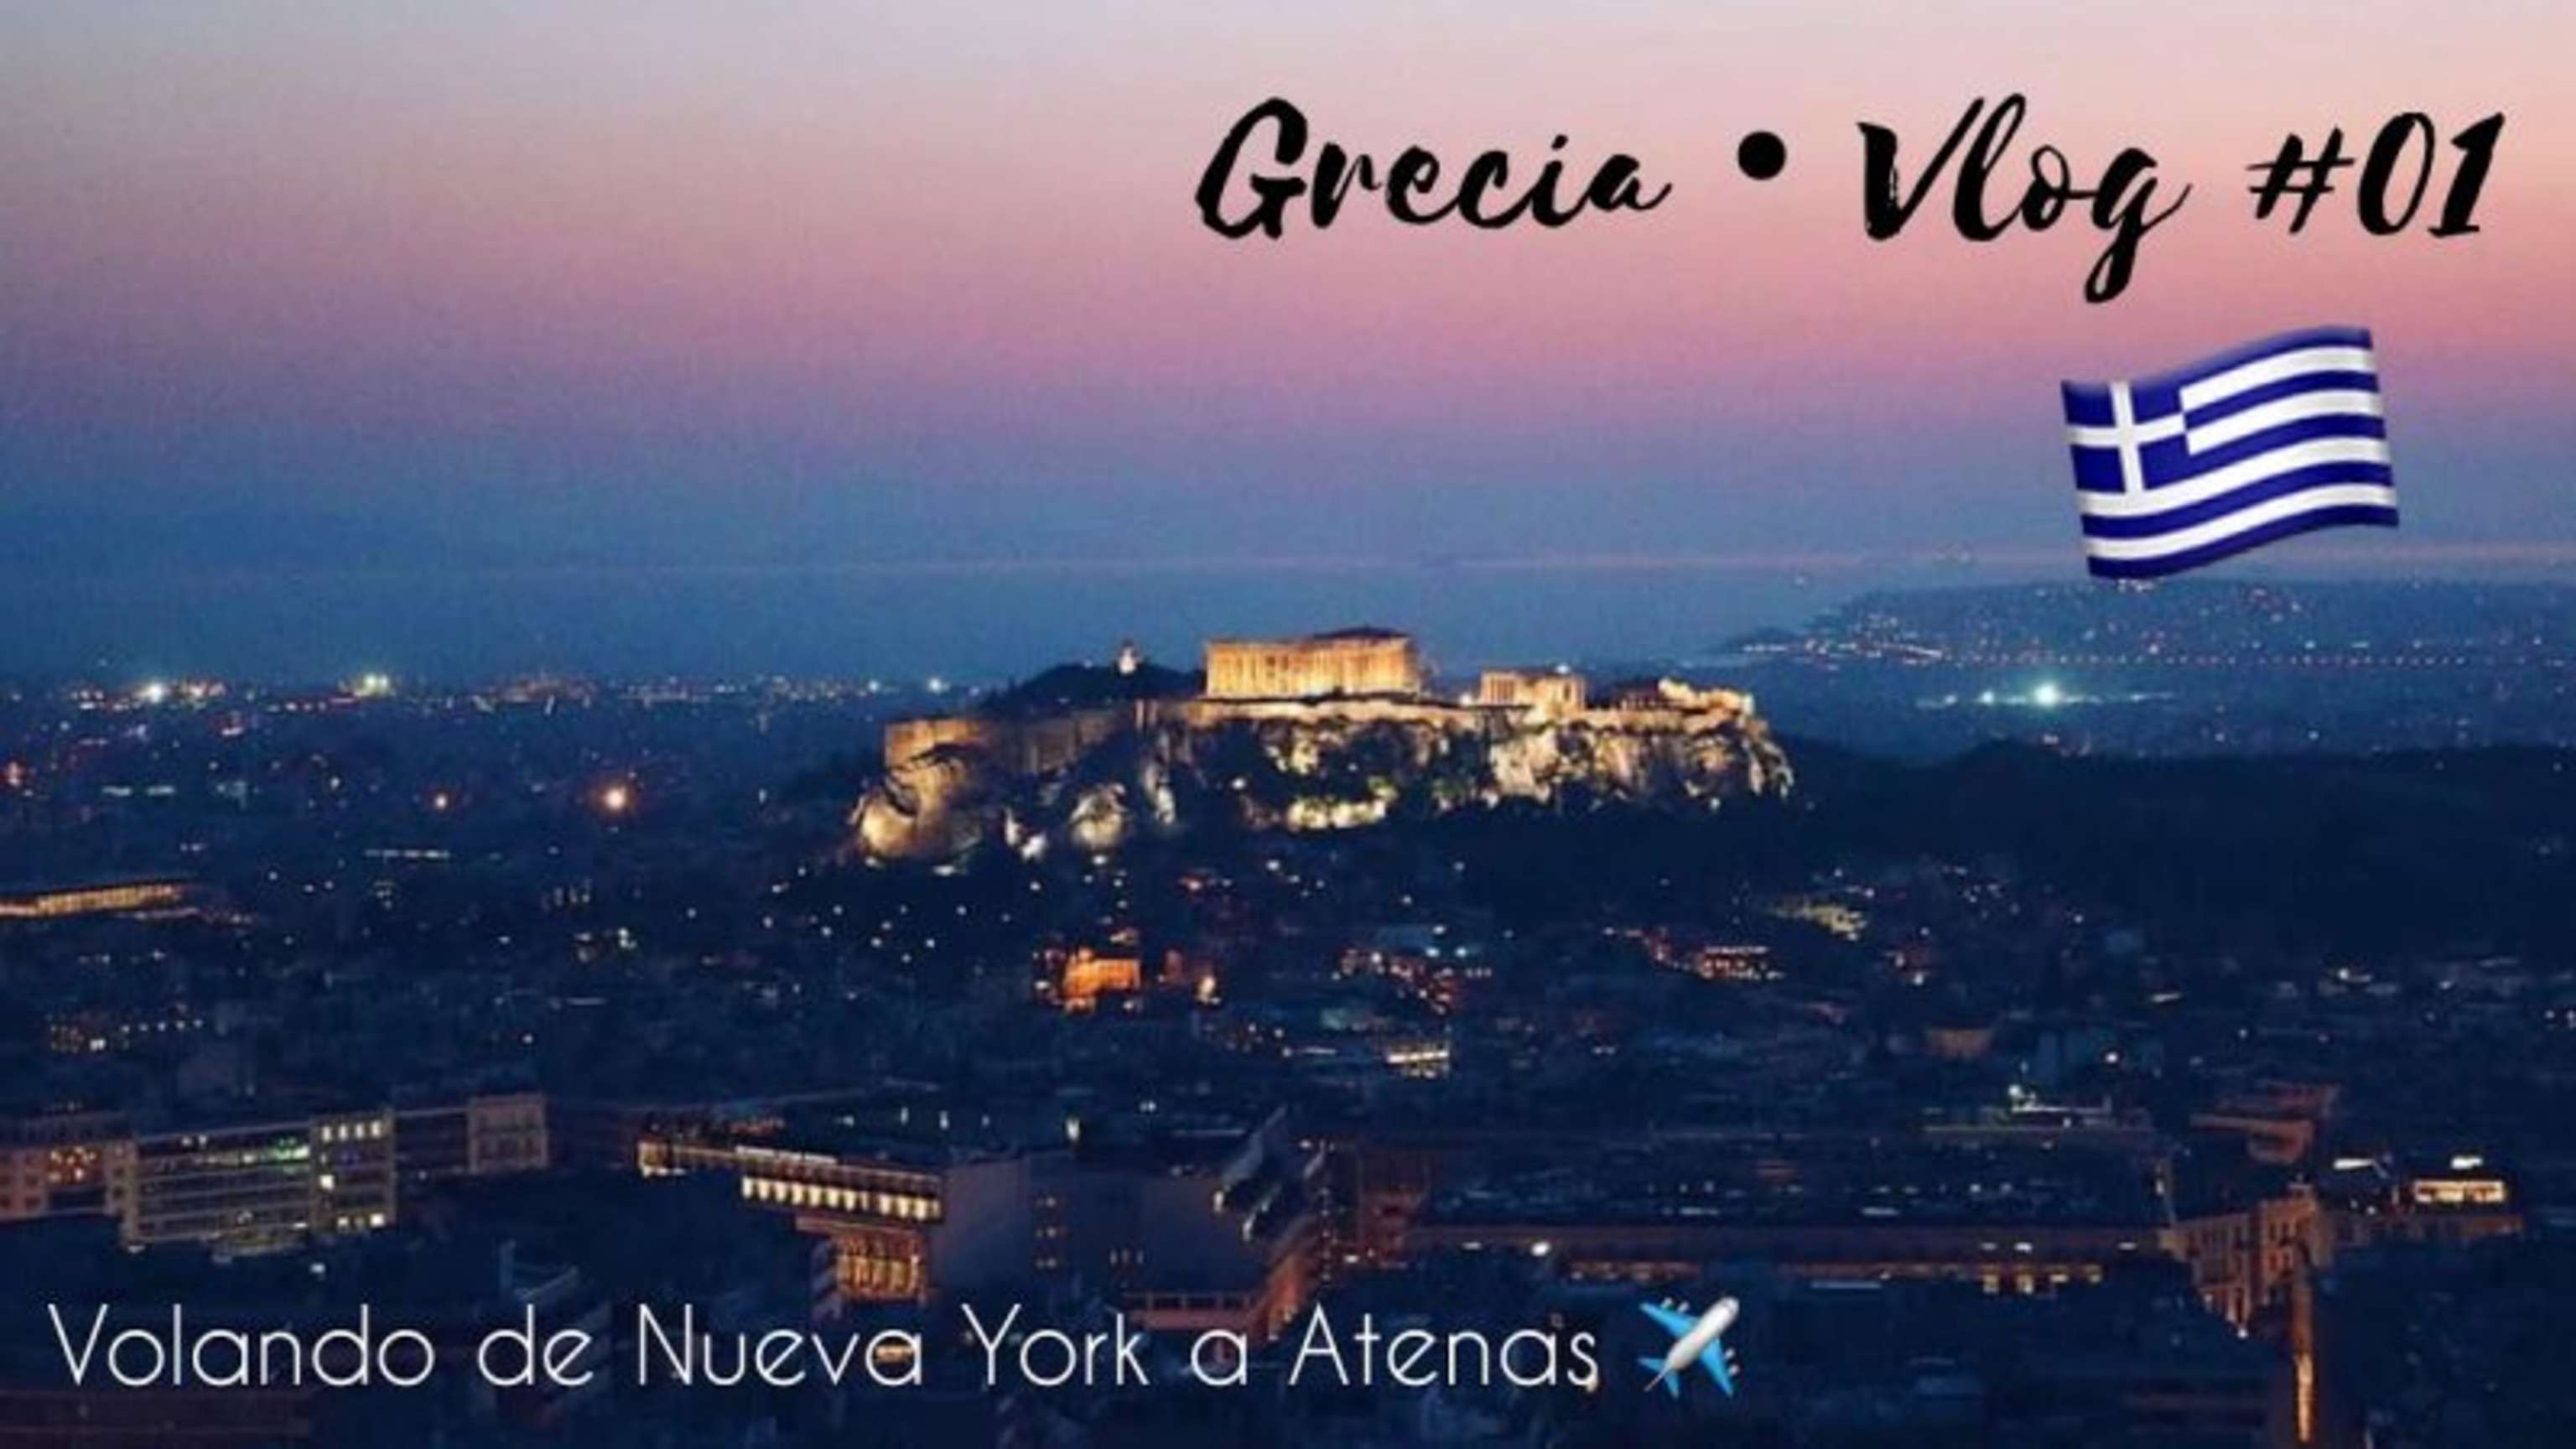 Volamos de Nueva York a Atenas ✈️ Primera noche en la ciudad! | GRECIA VLOGS #01